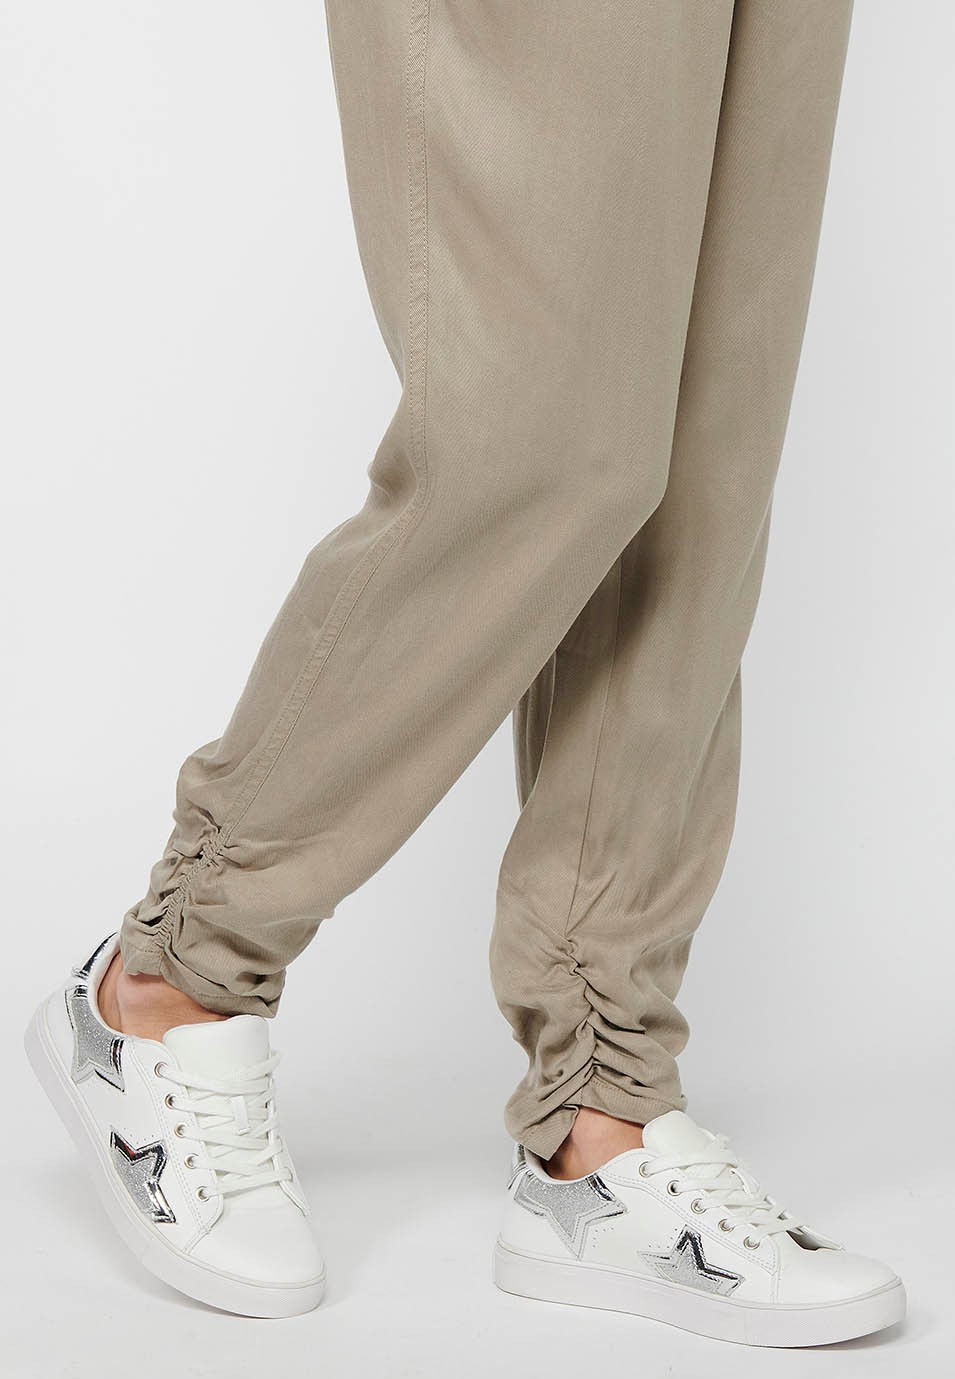 Pantalón largo jogger con Acabado rizado y Cintura engomada con Cuatro bolsillos, dos traseros con solapa de Color Gris para Mujer 7